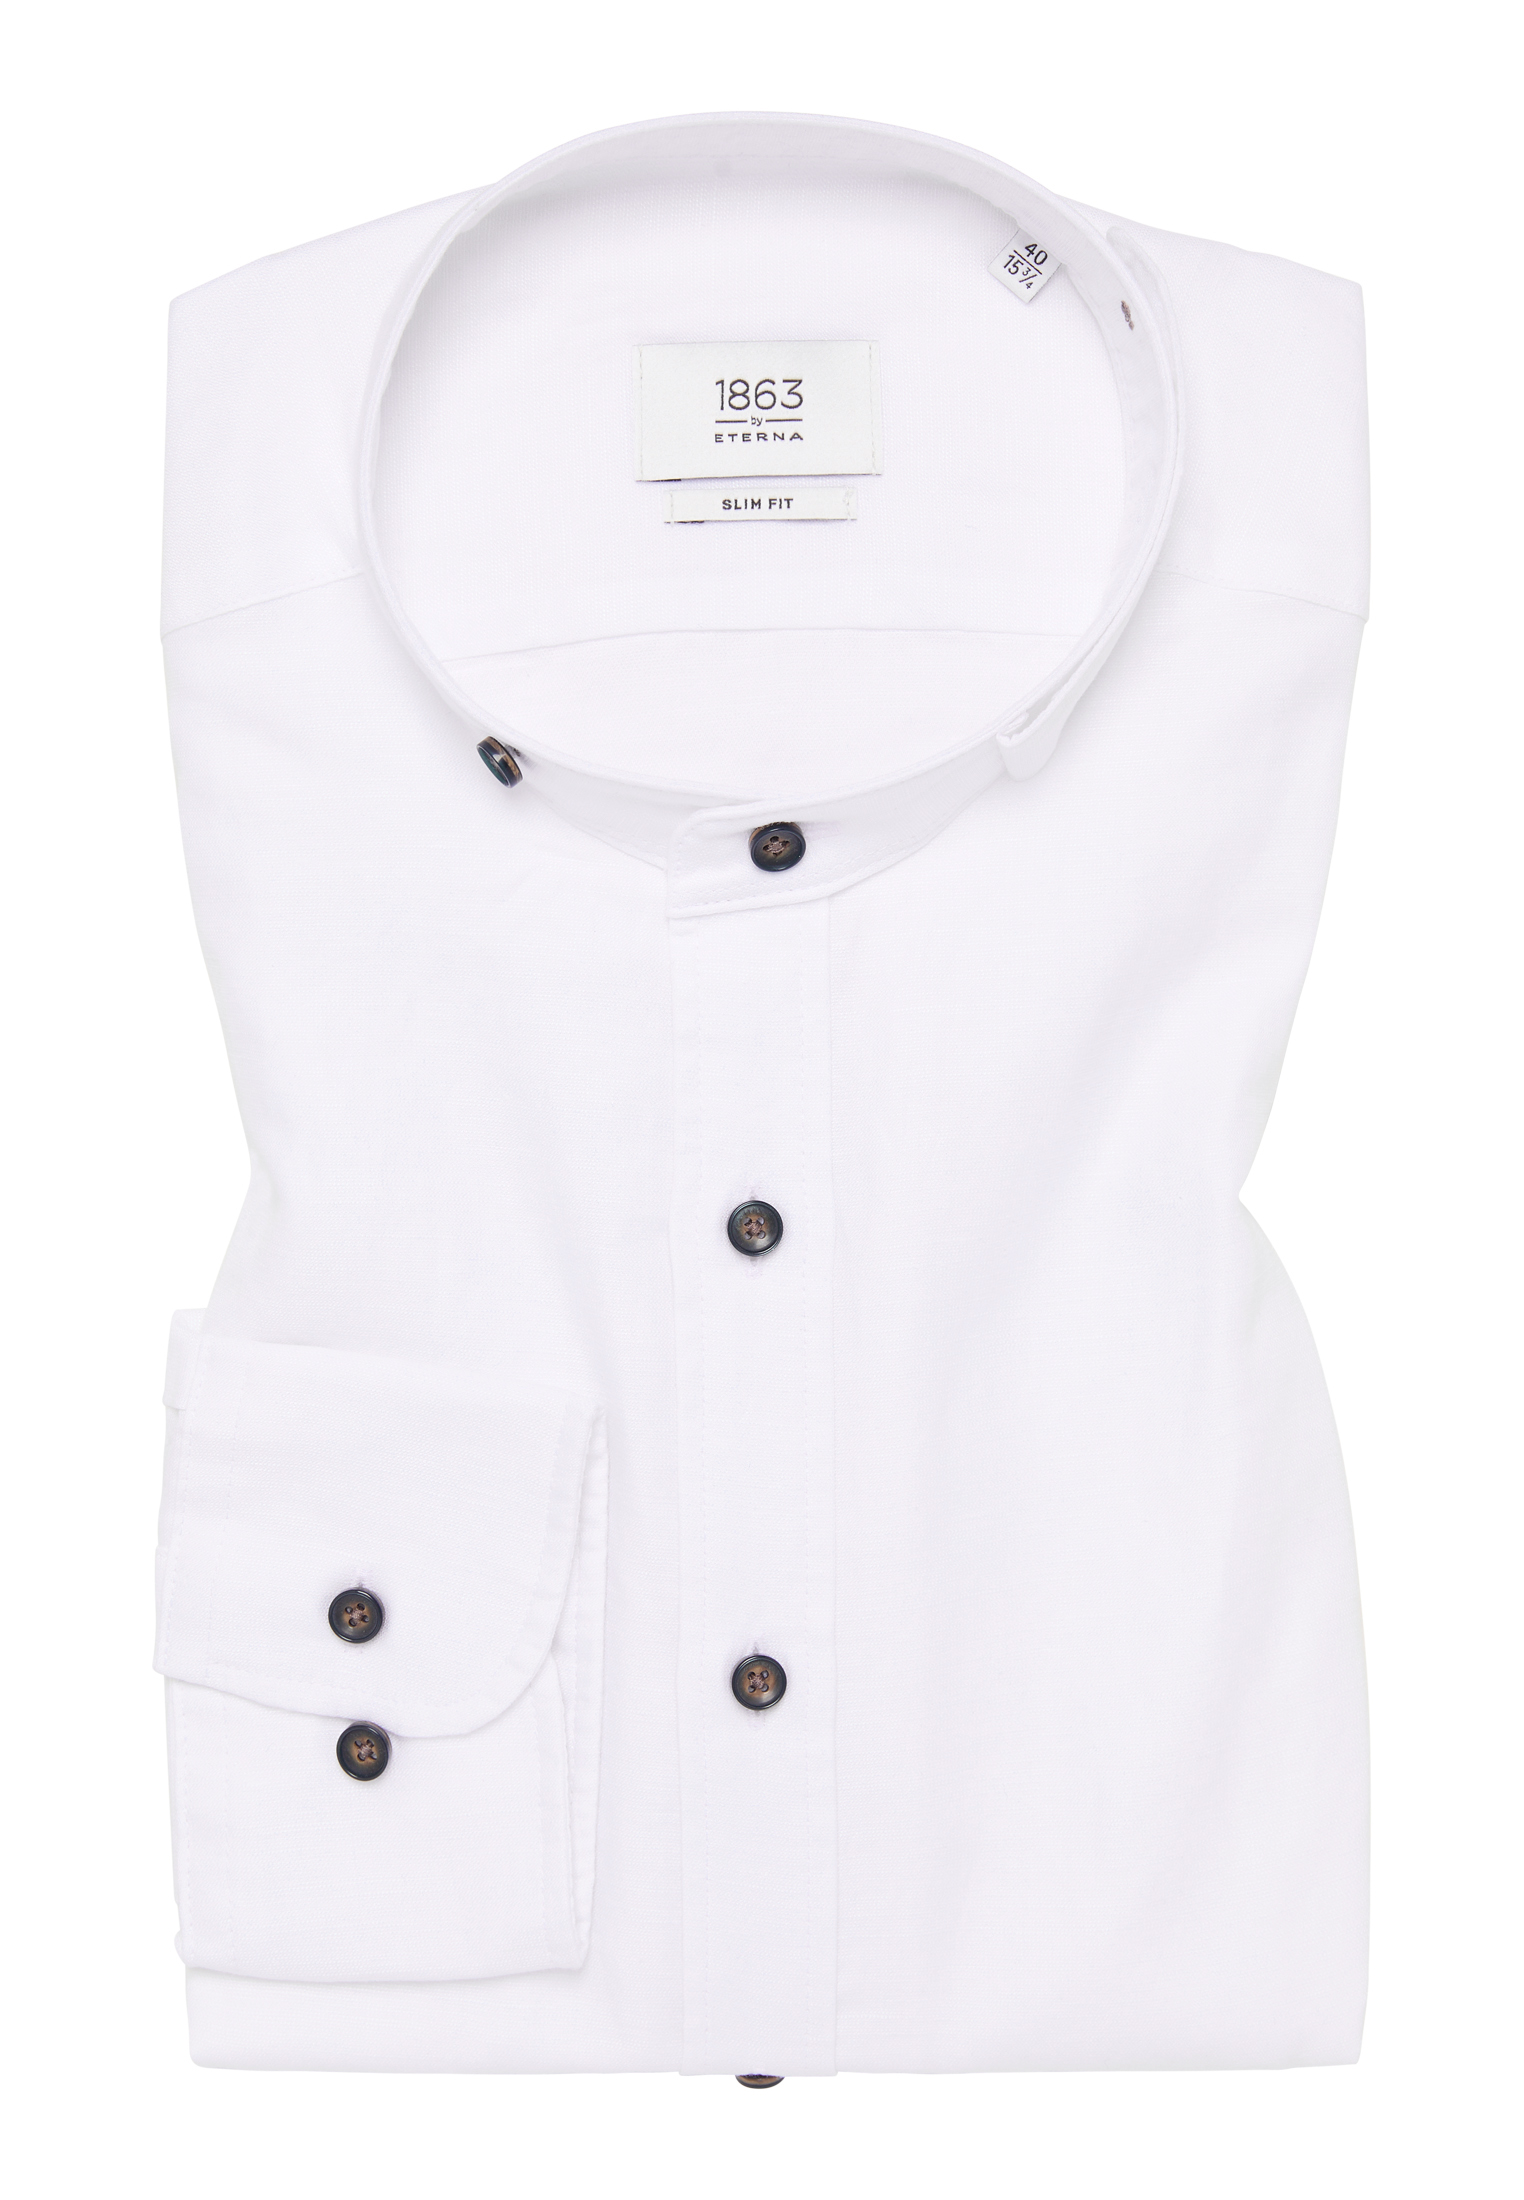 SLIM FIT Linen Shirt | 1SH12593-00-01-40-1/1 weiß Langarm unifarben | 40 in weiß | 